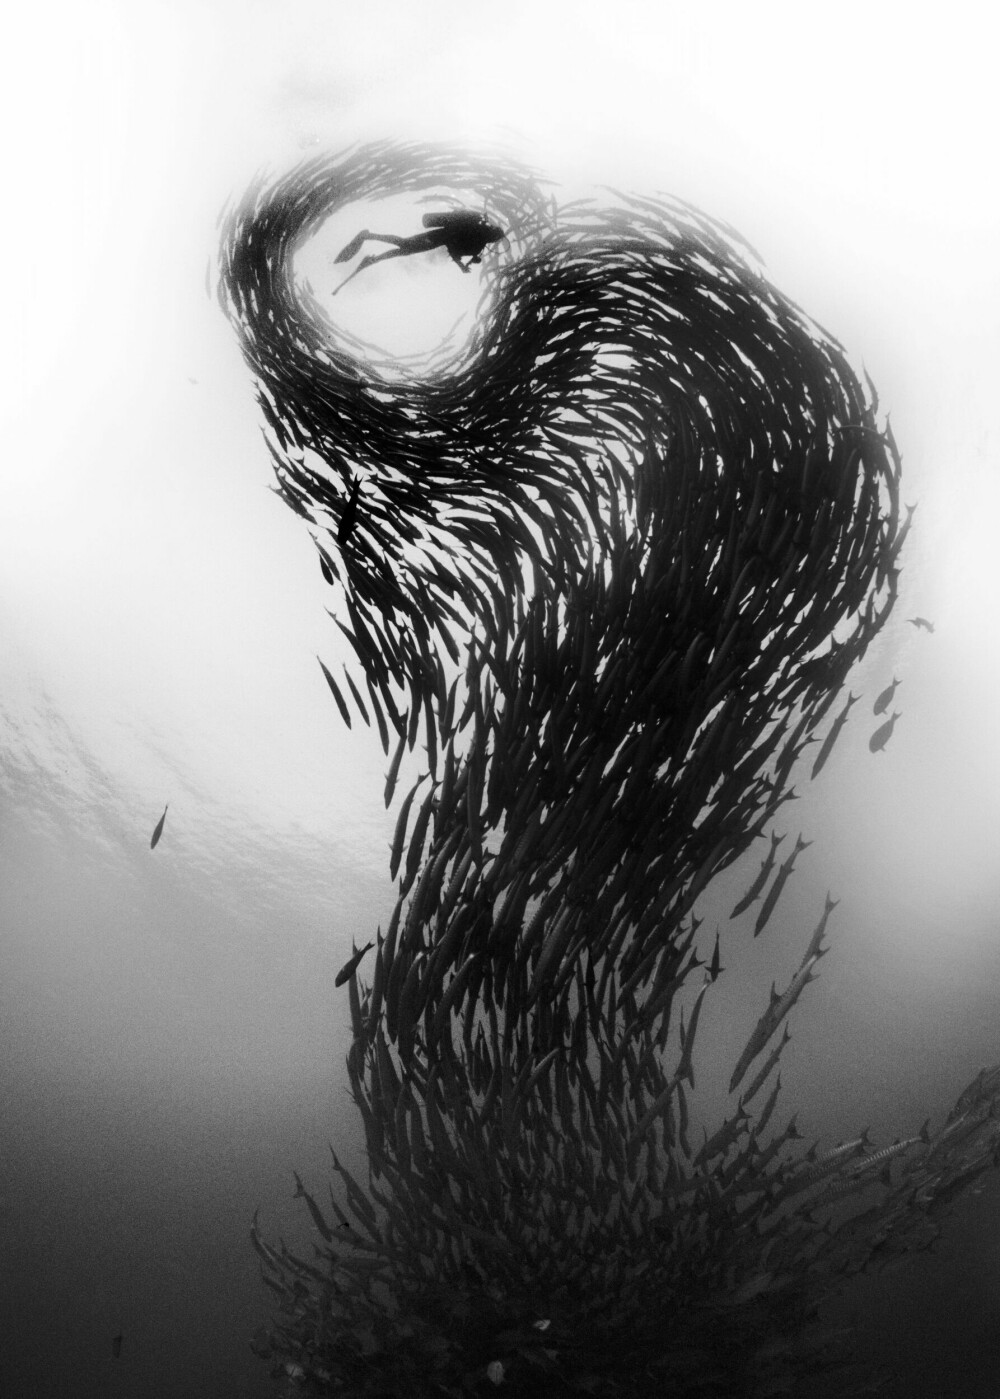 <b>I RETT ØYEBLIKK:</b> Stimen av barracuda-fisk med knivskarpe tenner skaper kunst i havet utenfor dykkerparadiset Sipadan i Malaysia. Bildet National Geographic-fotografen David Doubilet fikk tatt er ett av de som fanger et øyeblikk som i neste sekund er over og aldri vil la seg gjenta.